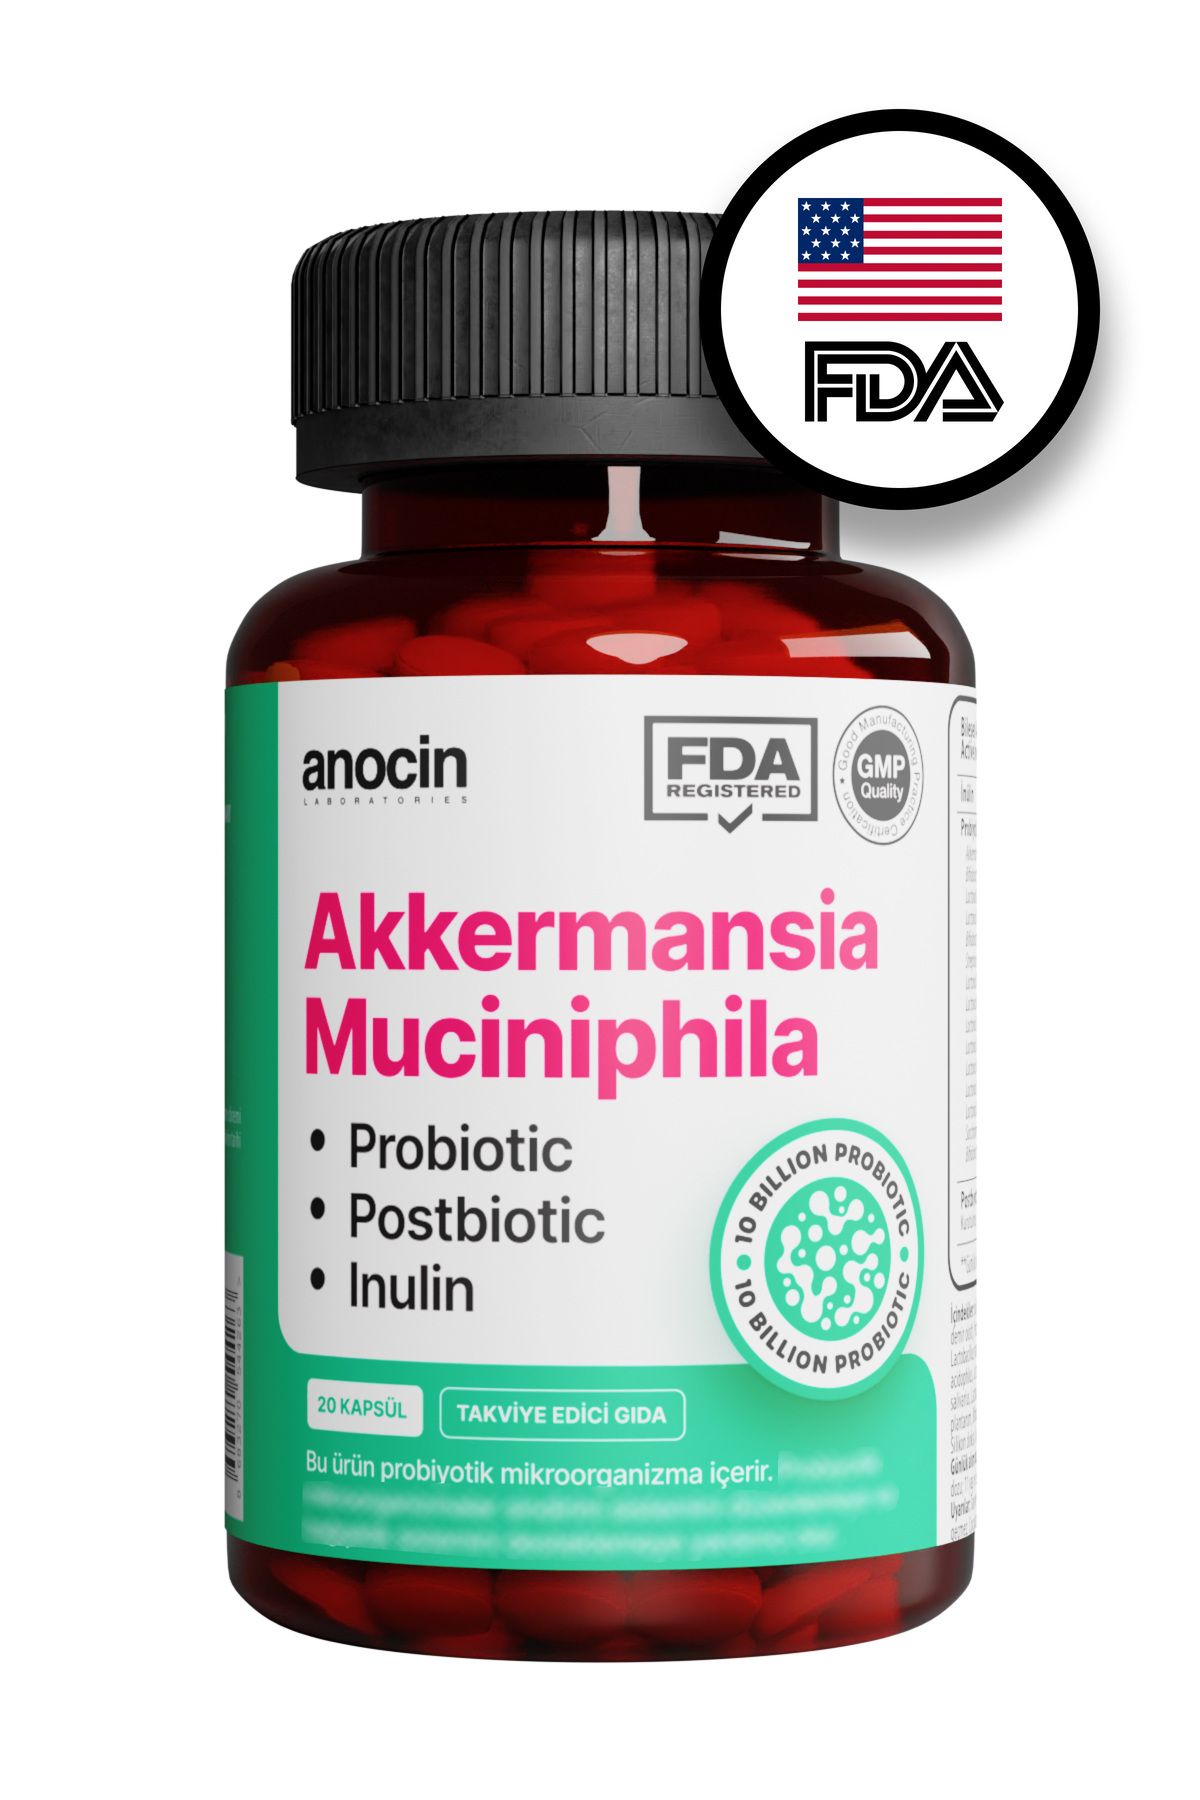 Akkermansia Muciniphila Probiyotik + Prebiyotik + Postbiyotik + inulin . x6 kat daha çok akkermansia